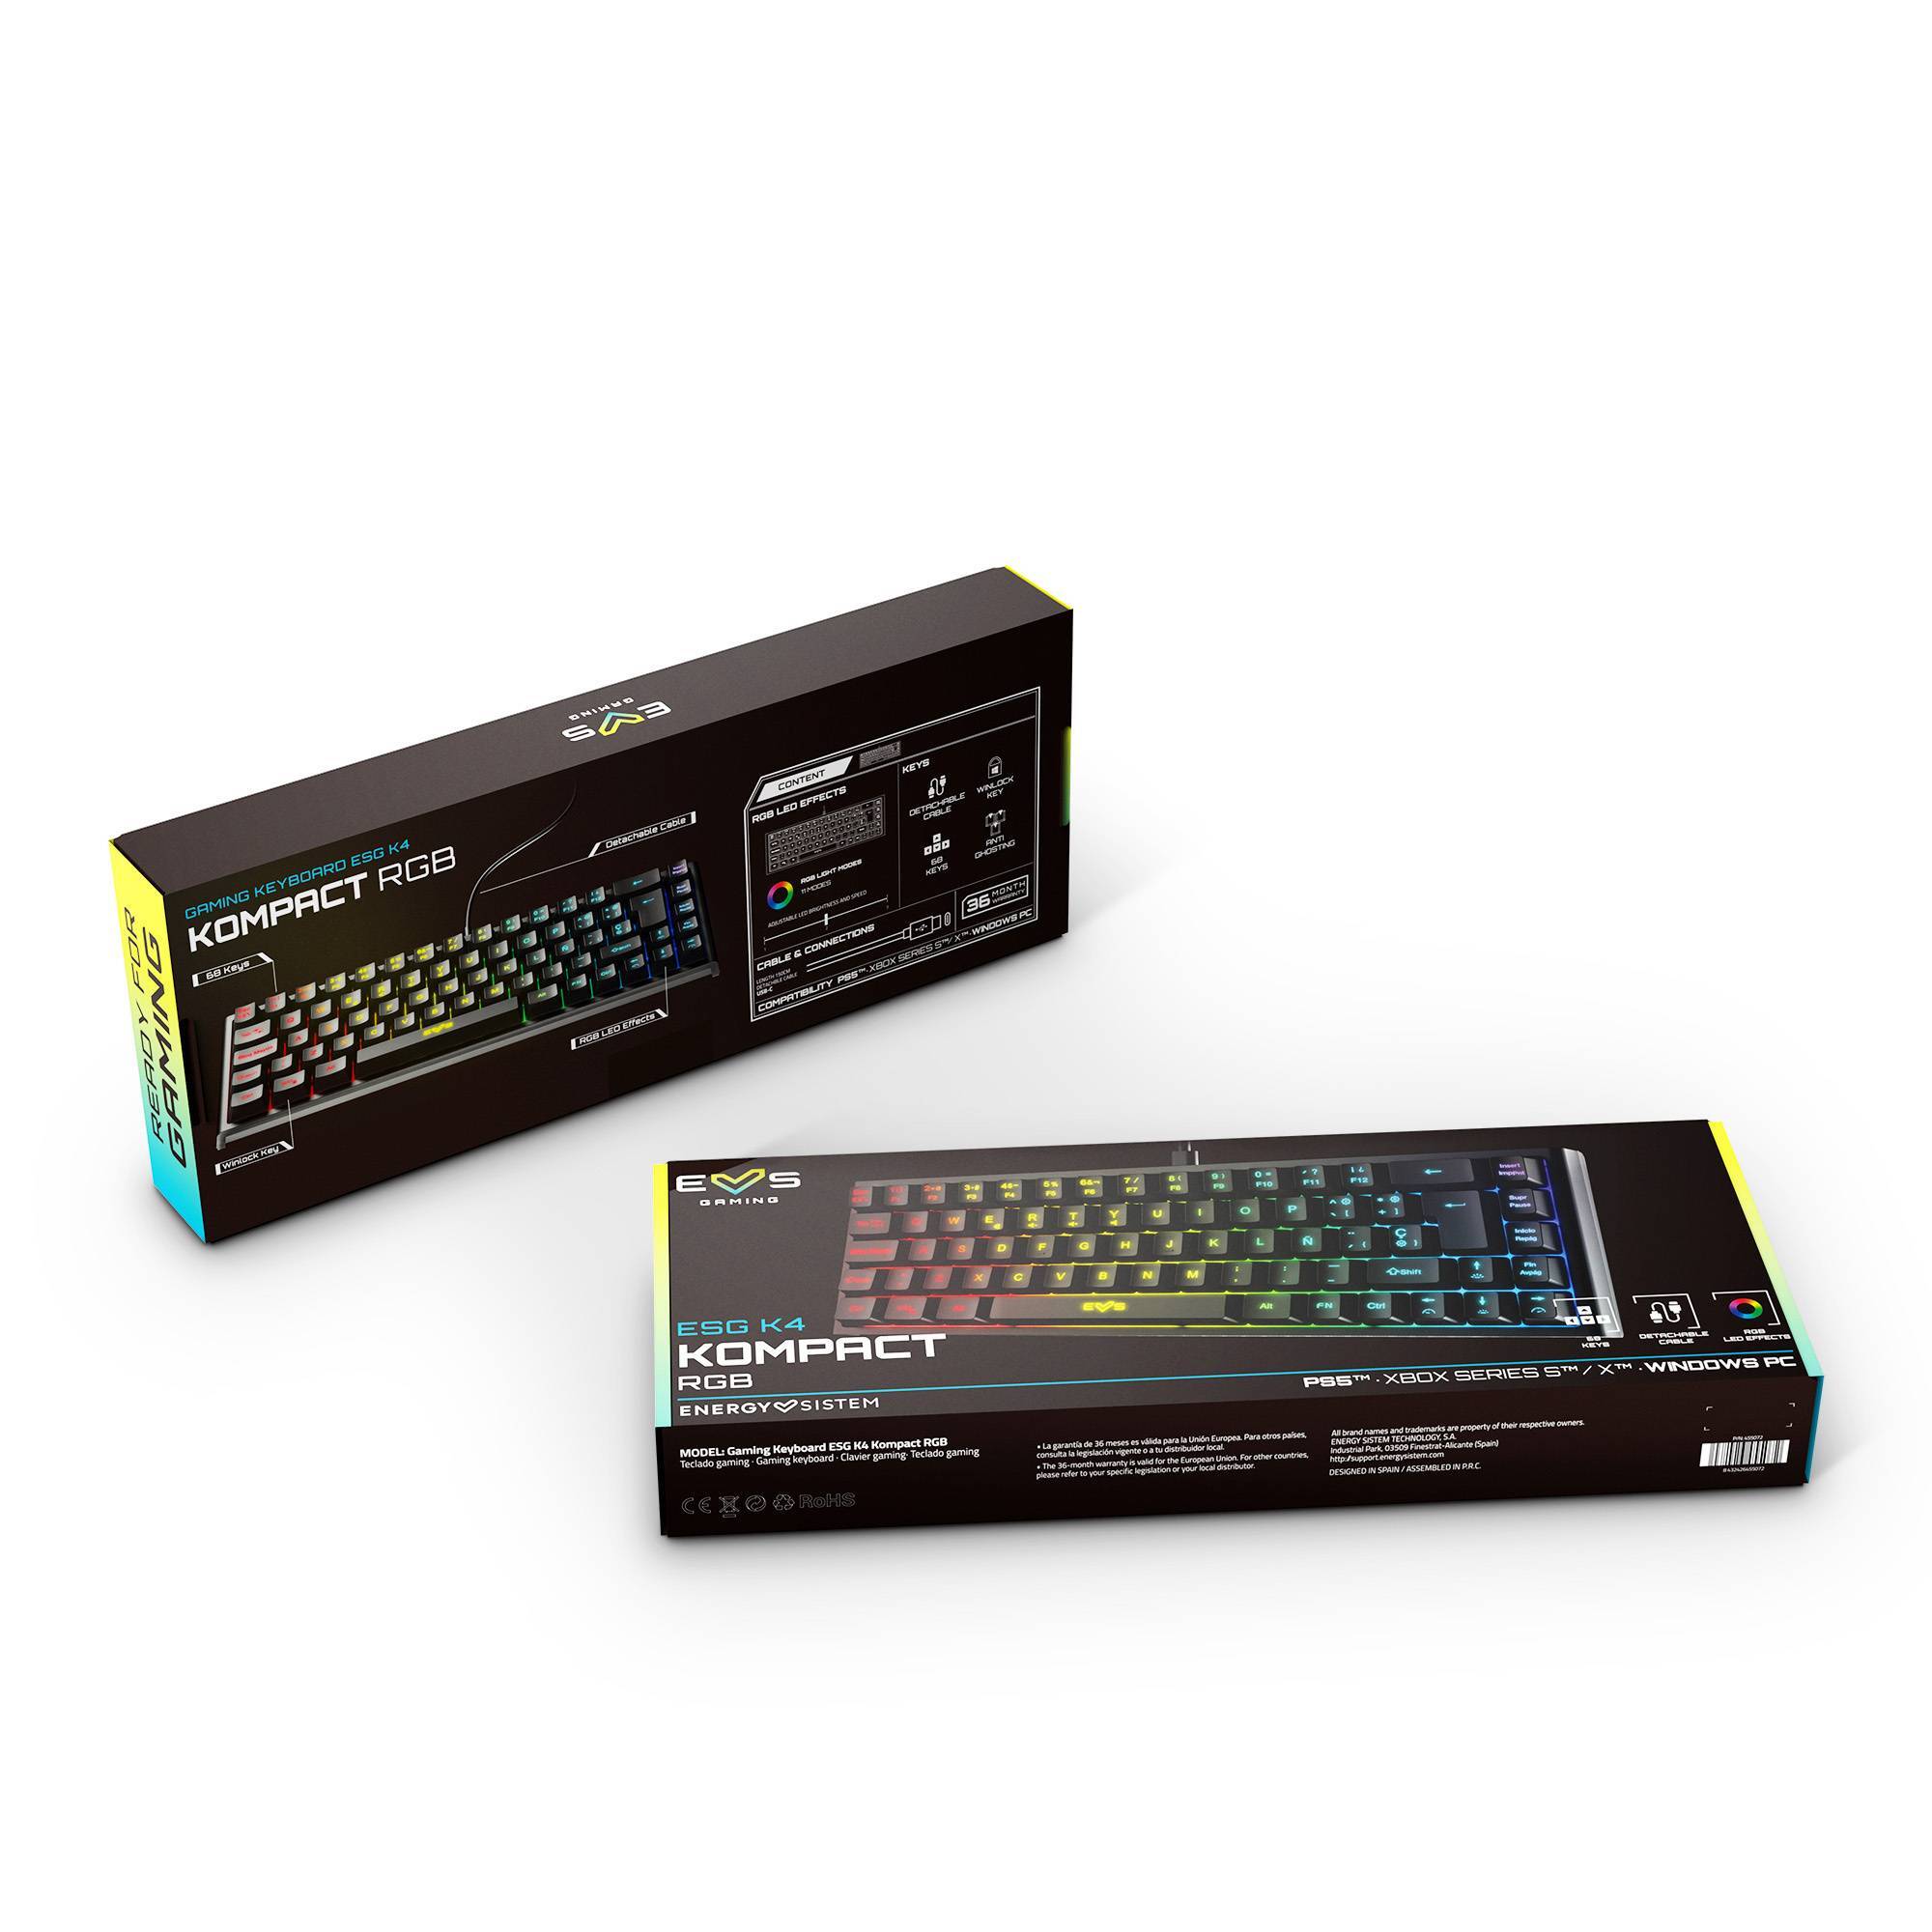 Emballage du clavier gaming ESG K4 KOMPACT-RGB BLACK